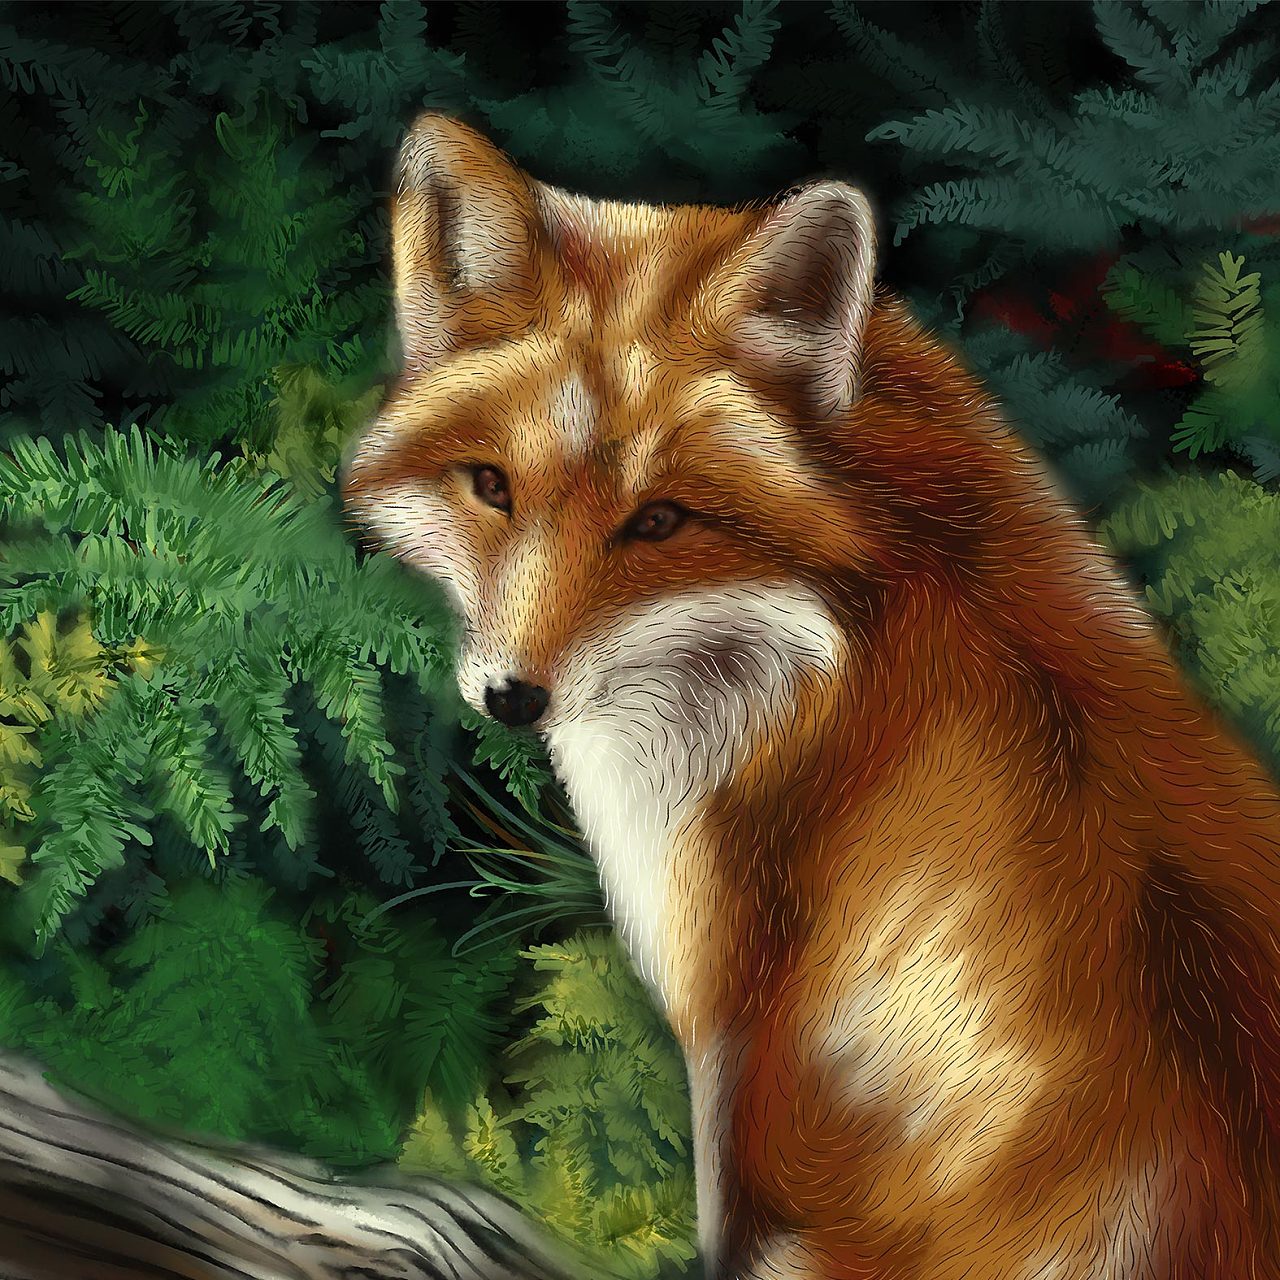 狐狸 arctic fox壁纸【10】狐狸壁纸图片_桌面壁纸图片_壁纸下载-元气壁纸